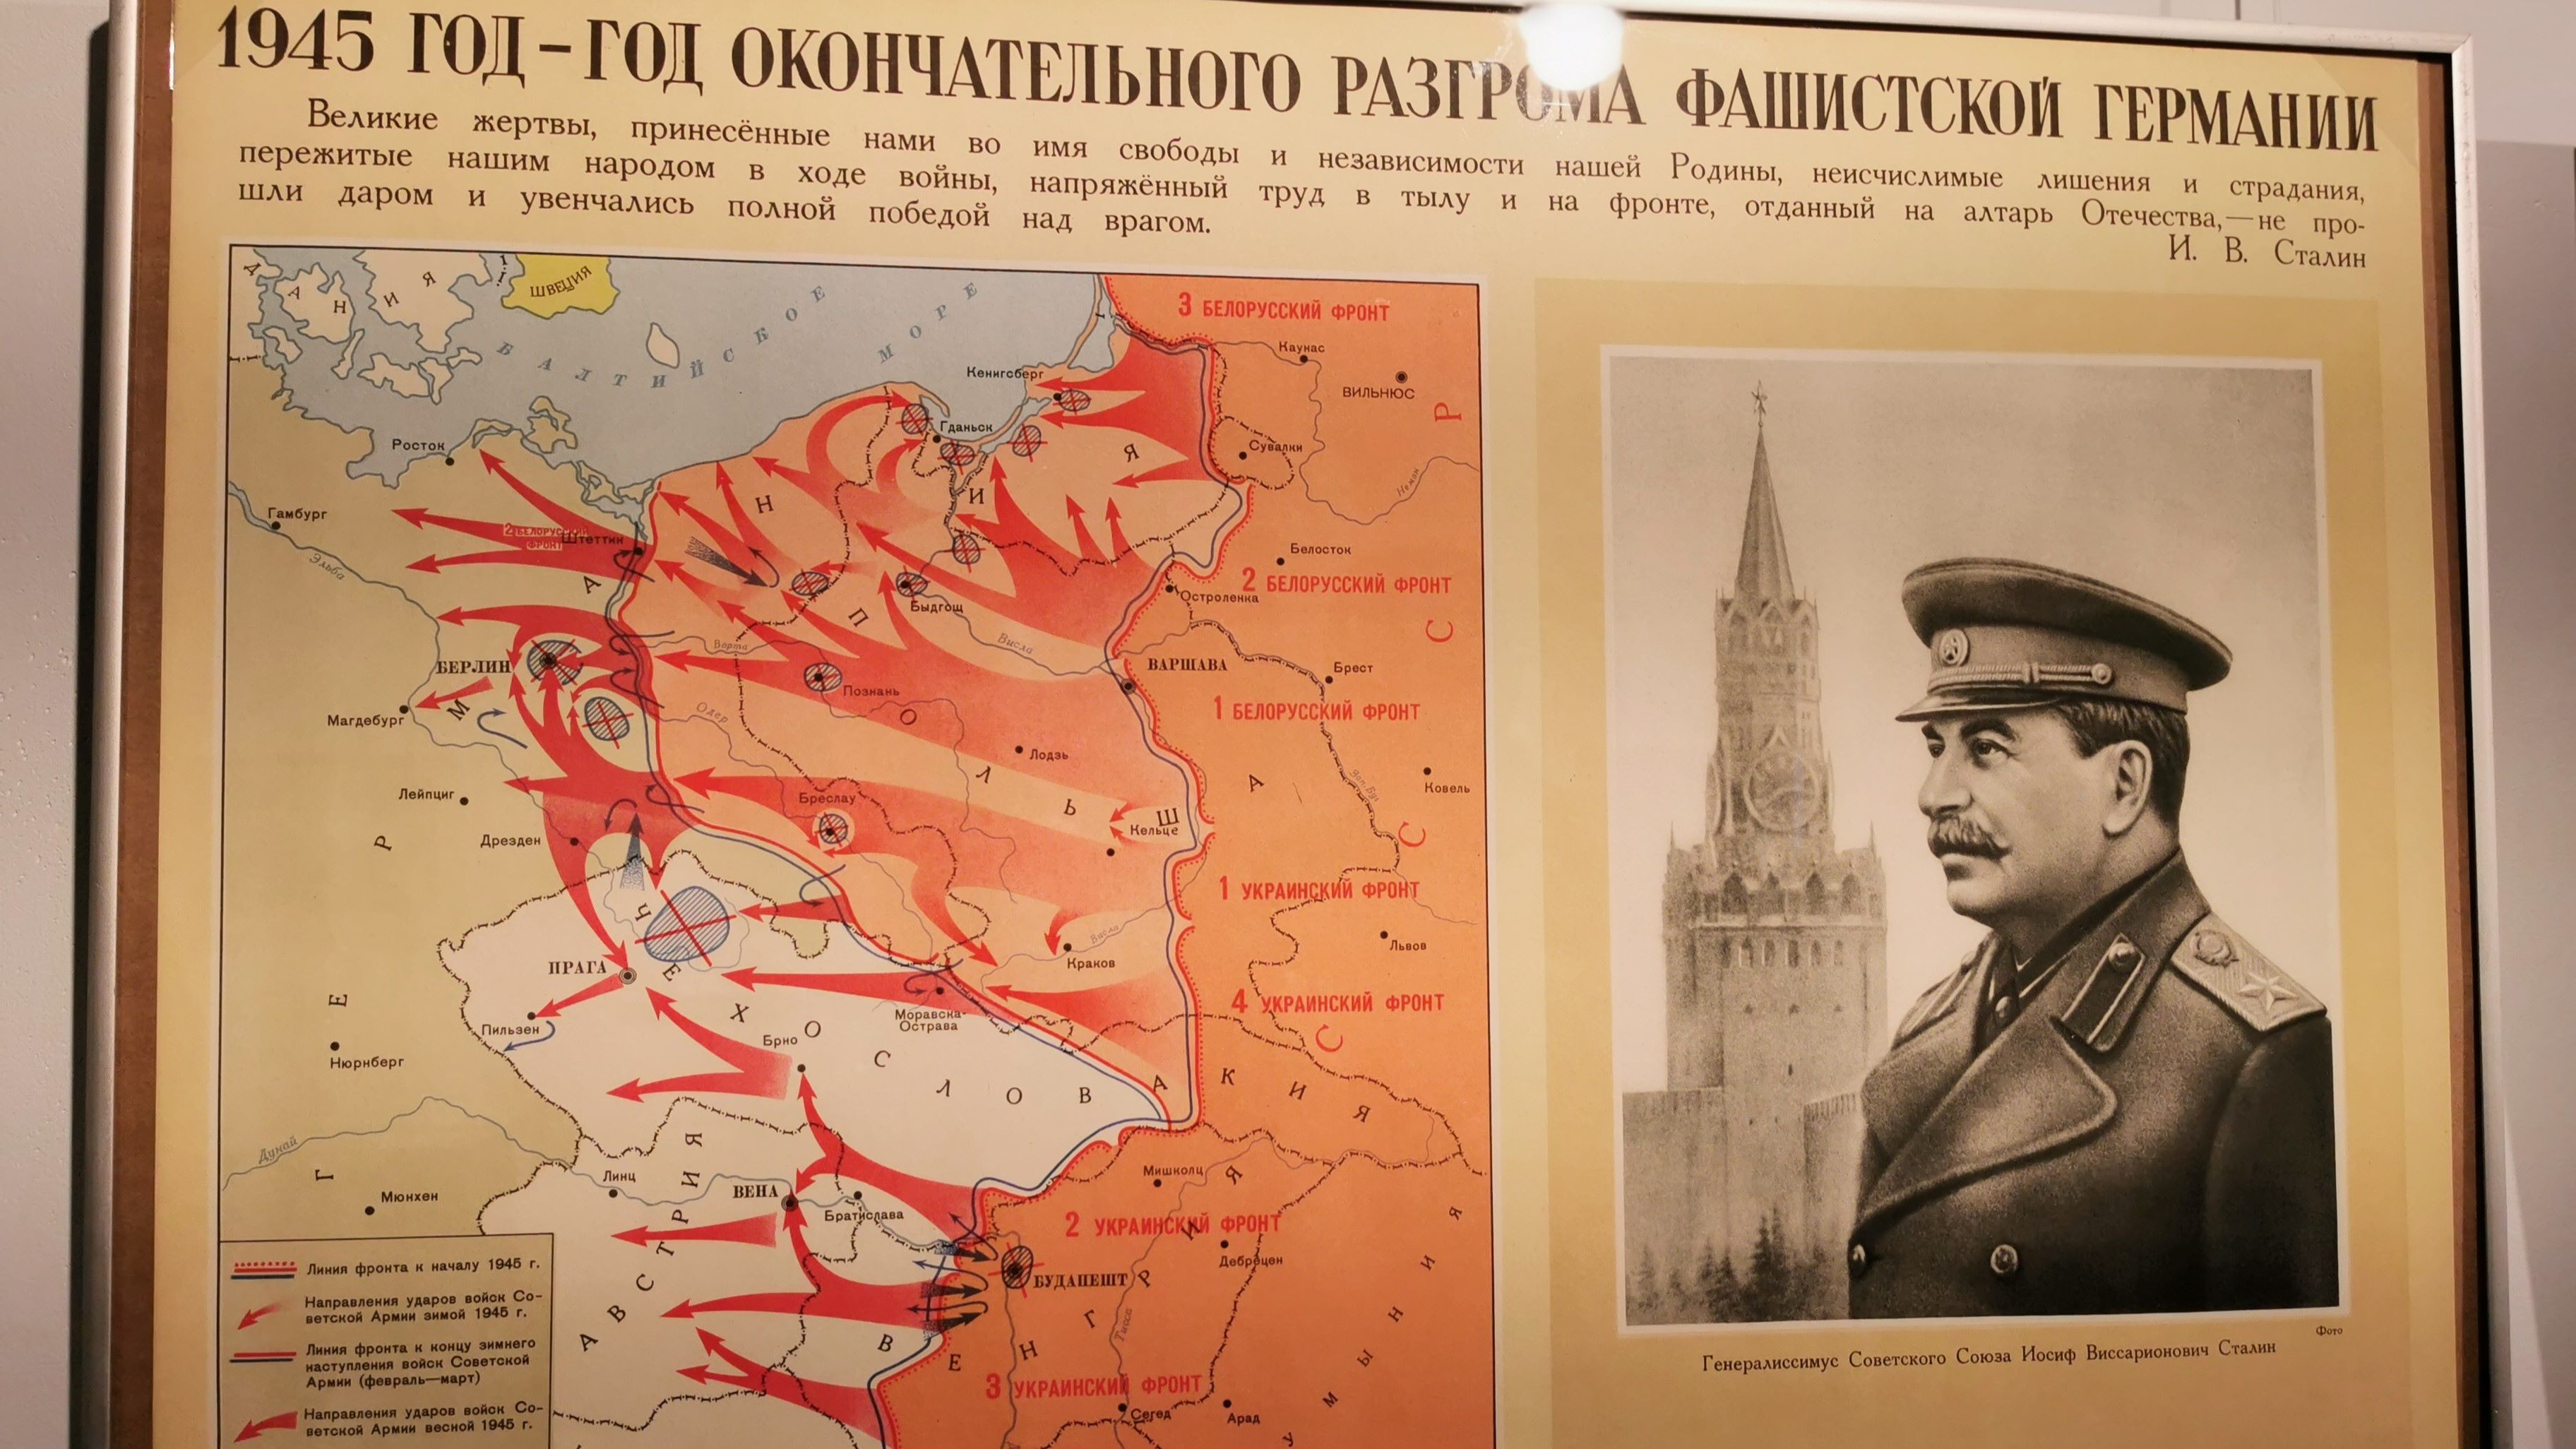 Нападение сталина на германию. Карта Великой Отечественной войны 1941-1945г.. Карта ВОВ 1945 года.